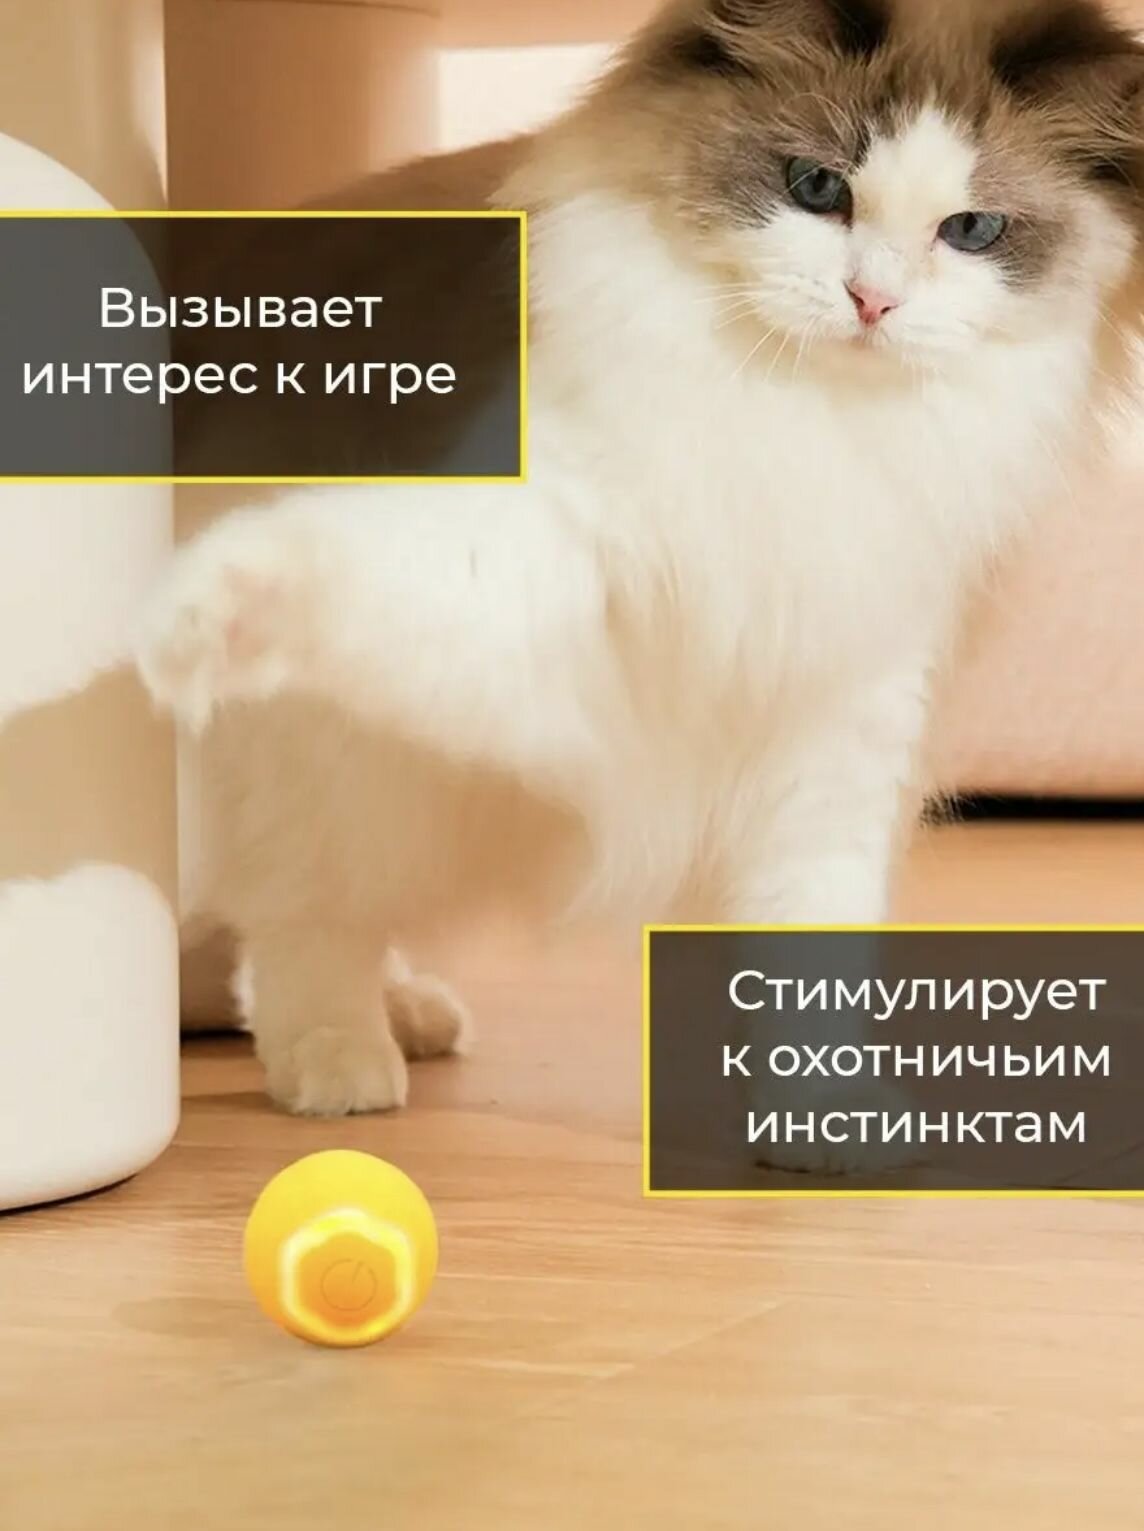 Игрушка для кошек интерактивный мячик, дразнилка, умный, автоматический мячик для кота голубой